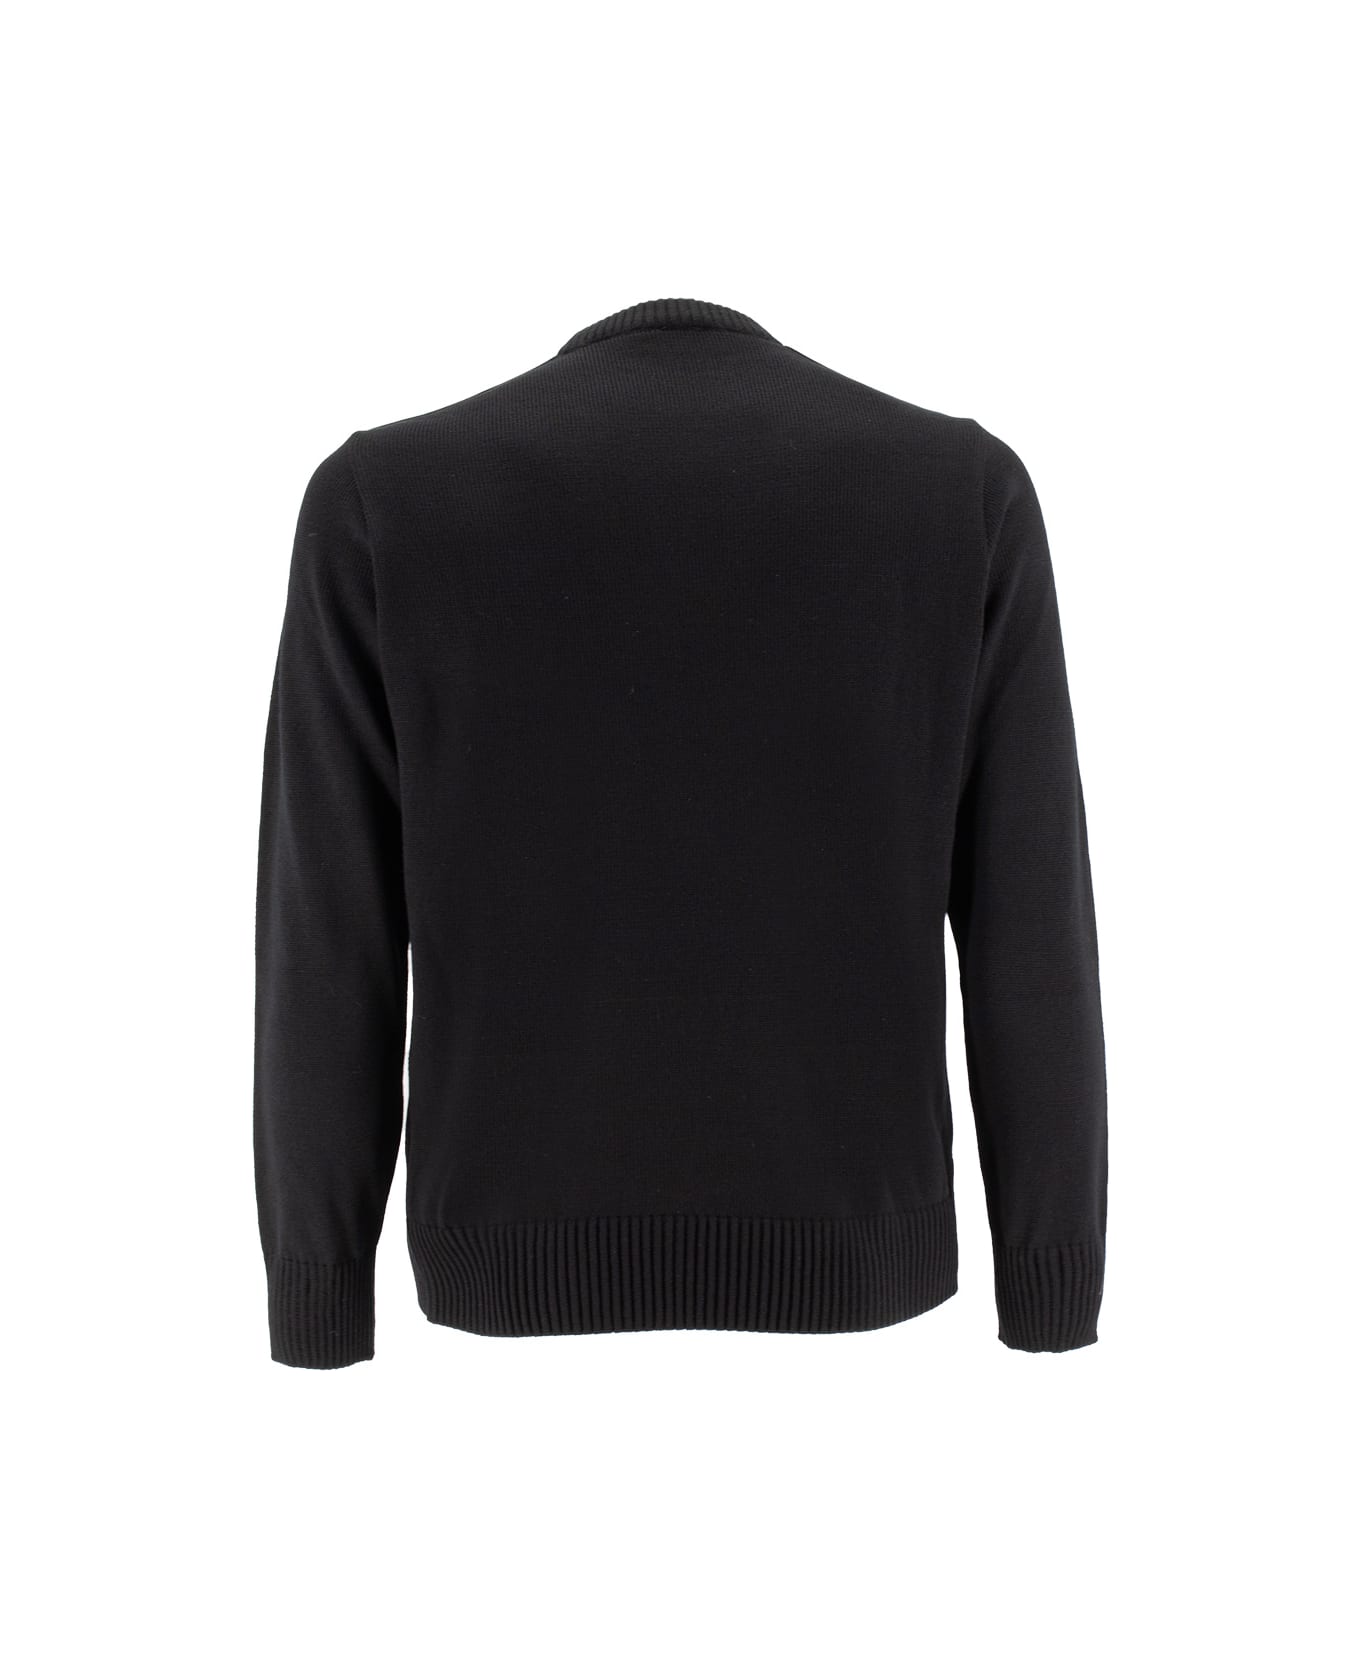 Paul&Shark Sweater - BLACK  BLACK